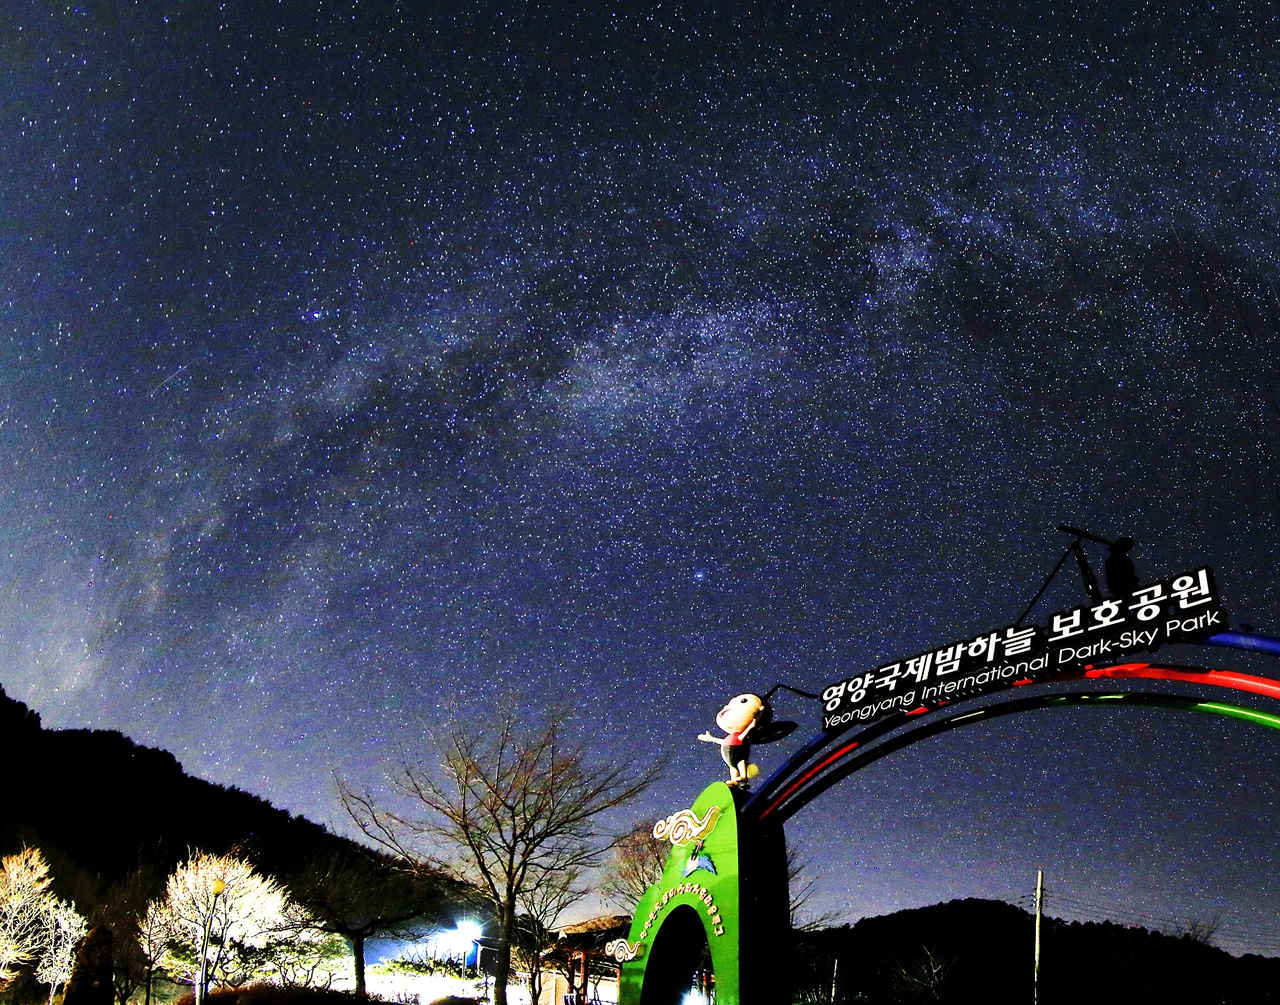 '슬로시티 영양군'을 아름답게 만들어주는 밤하늘의 별들.
